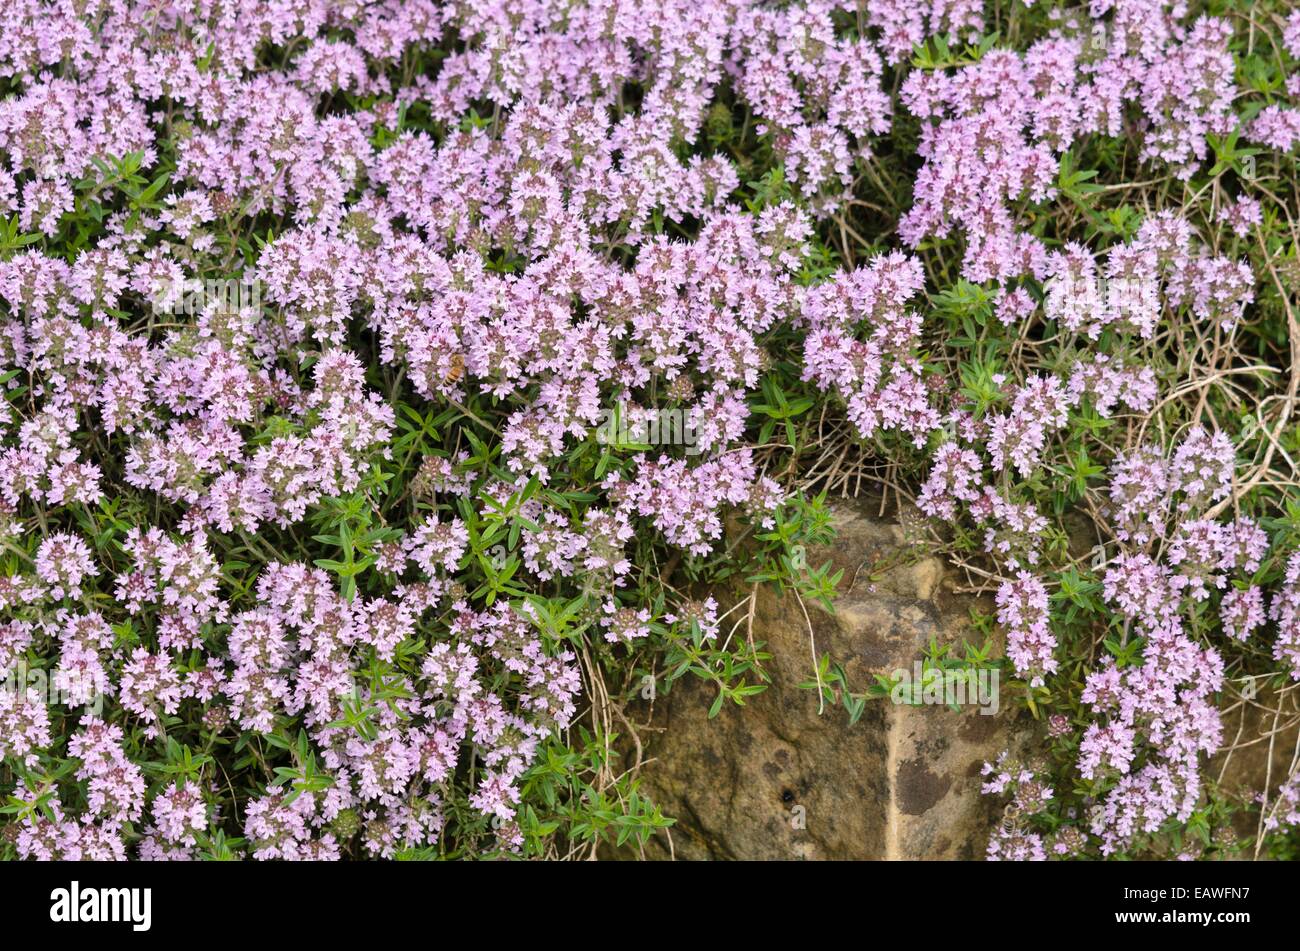 Thyme (Thymus marshallianus) Stock Photo